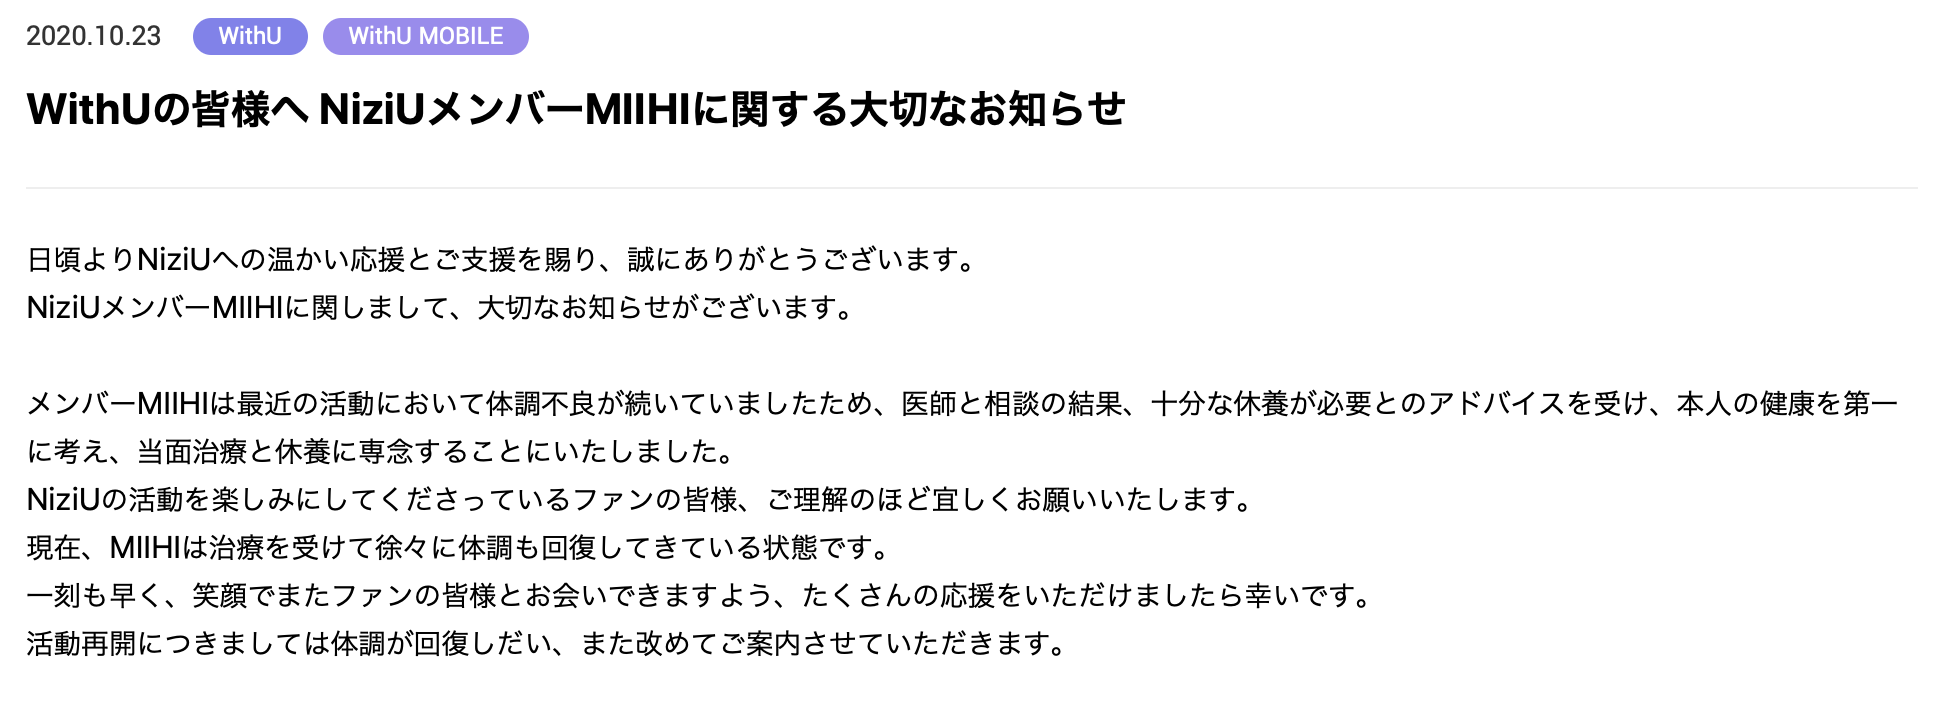 公式サイトでミイヒの活動休止が発表された